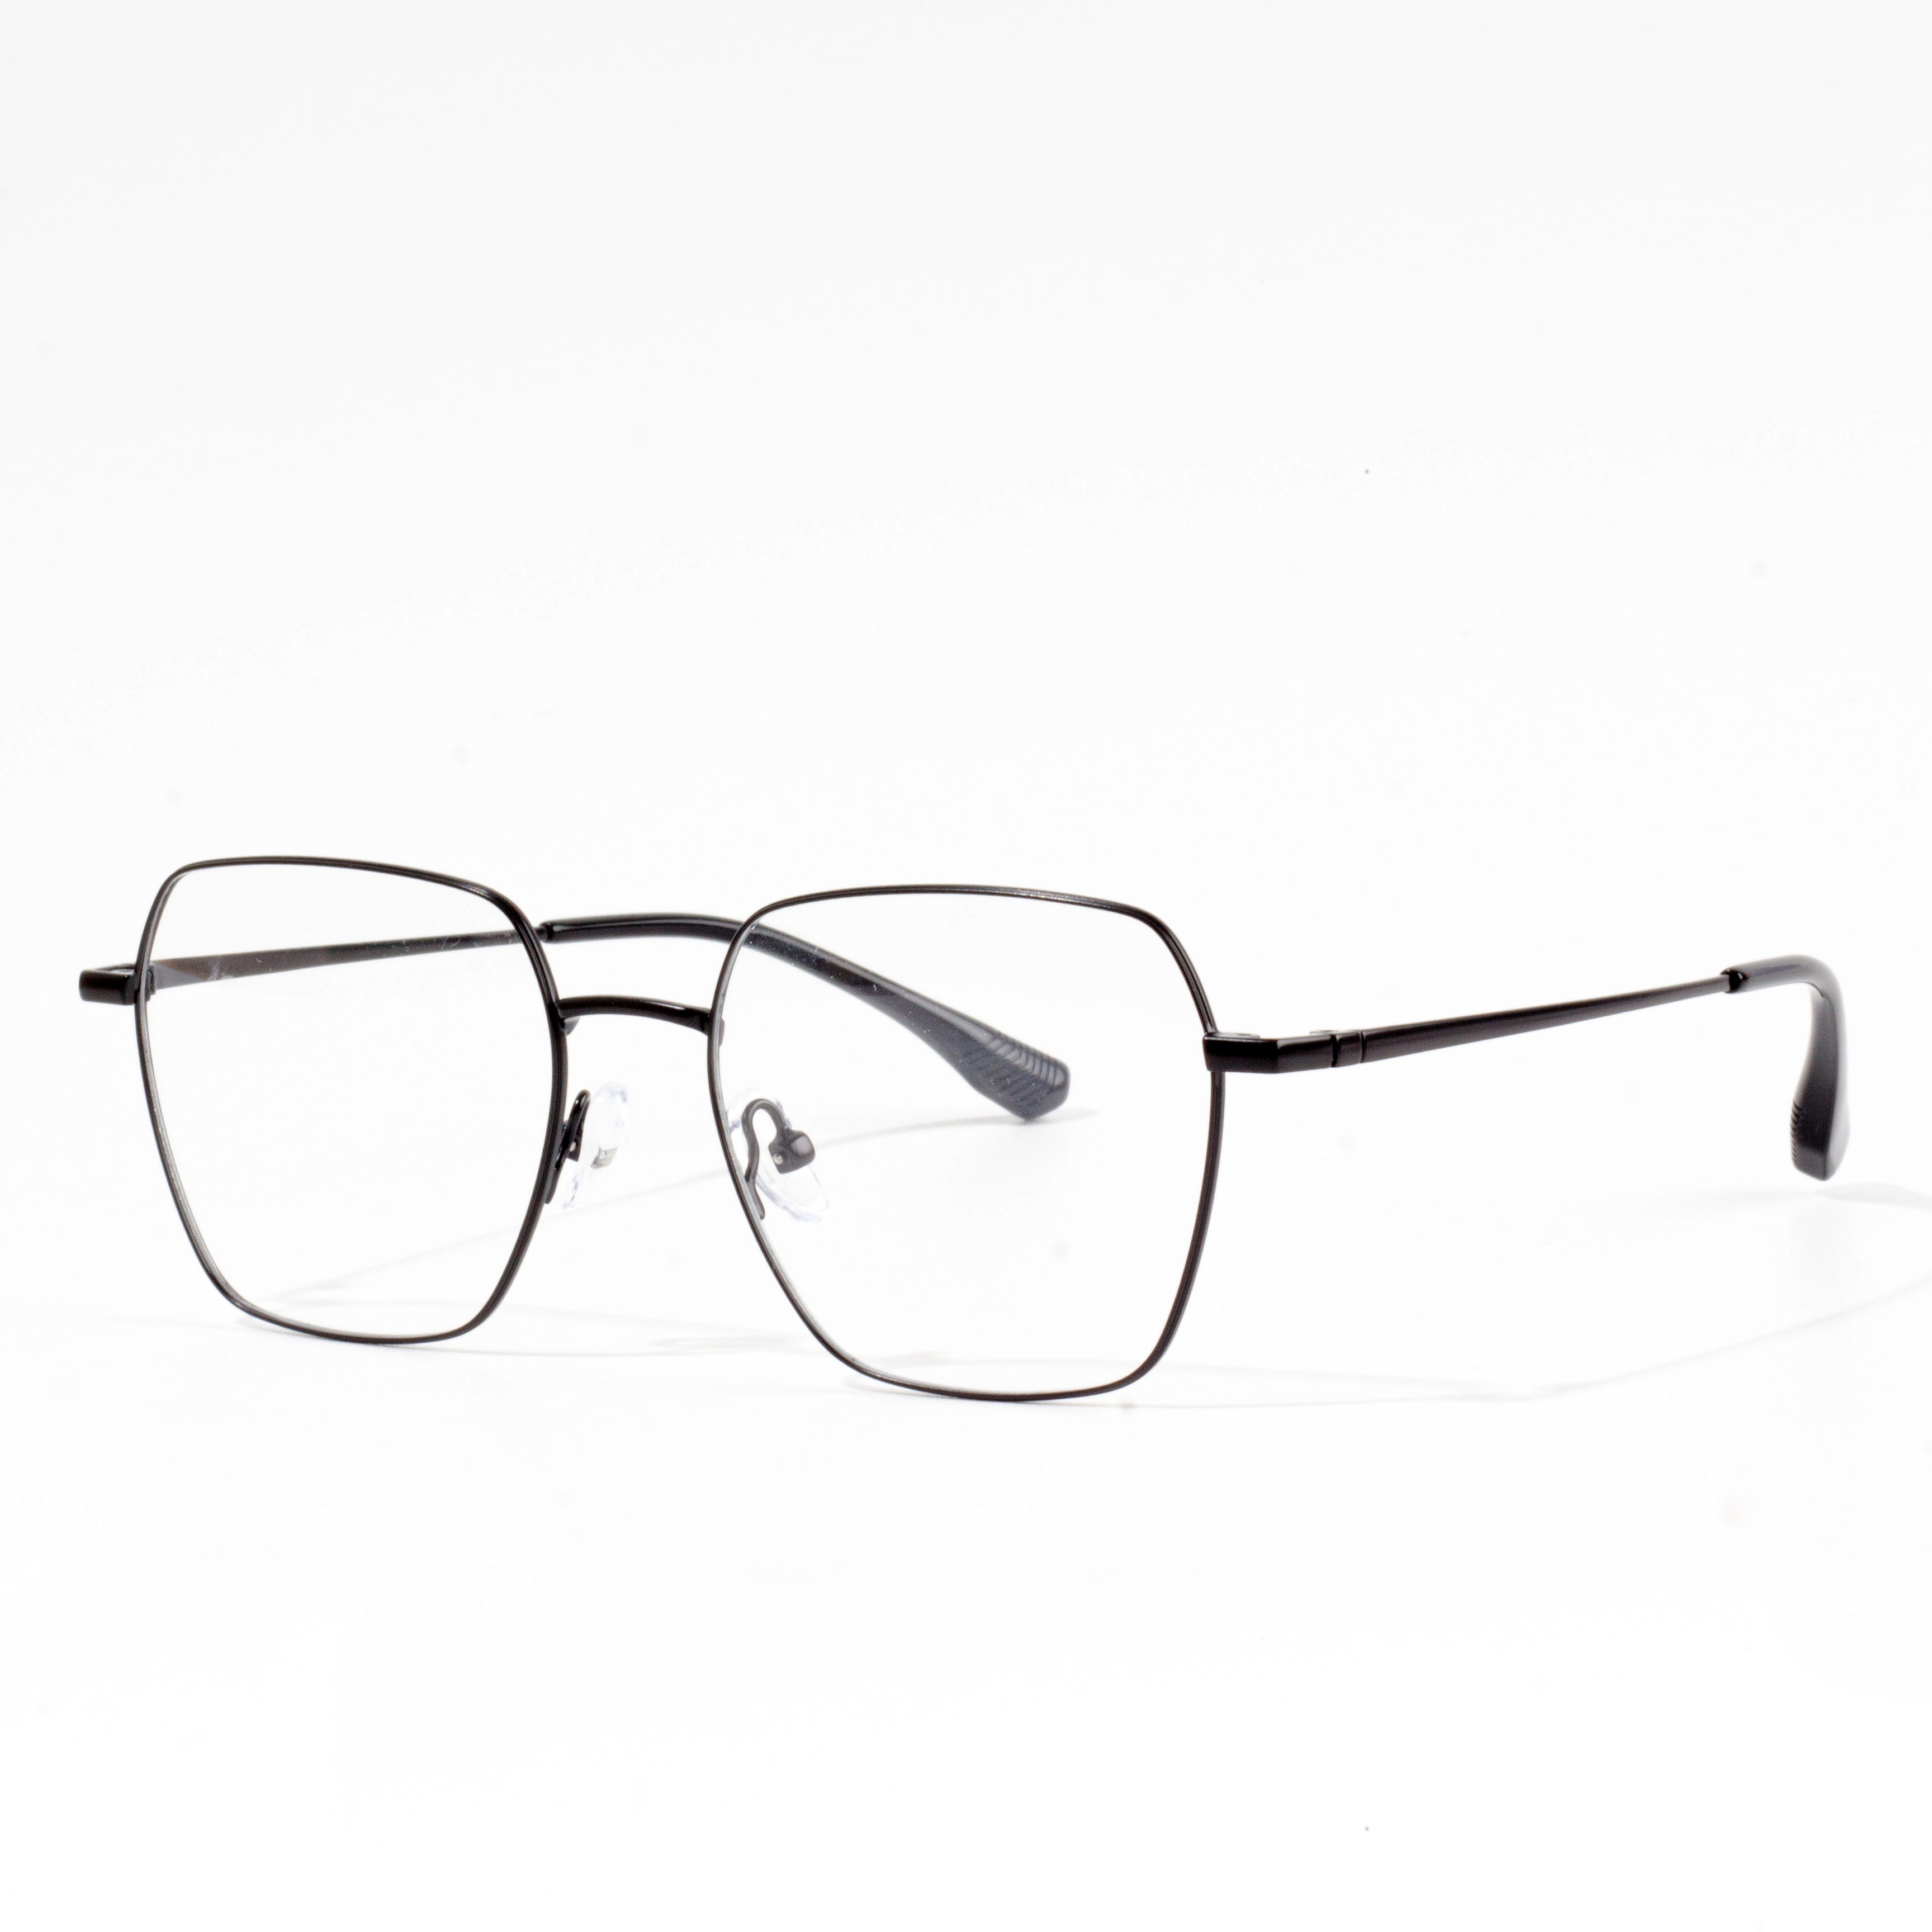 Λεπτά & ελαφριά μεταλλικά γυαλιά οράσεως